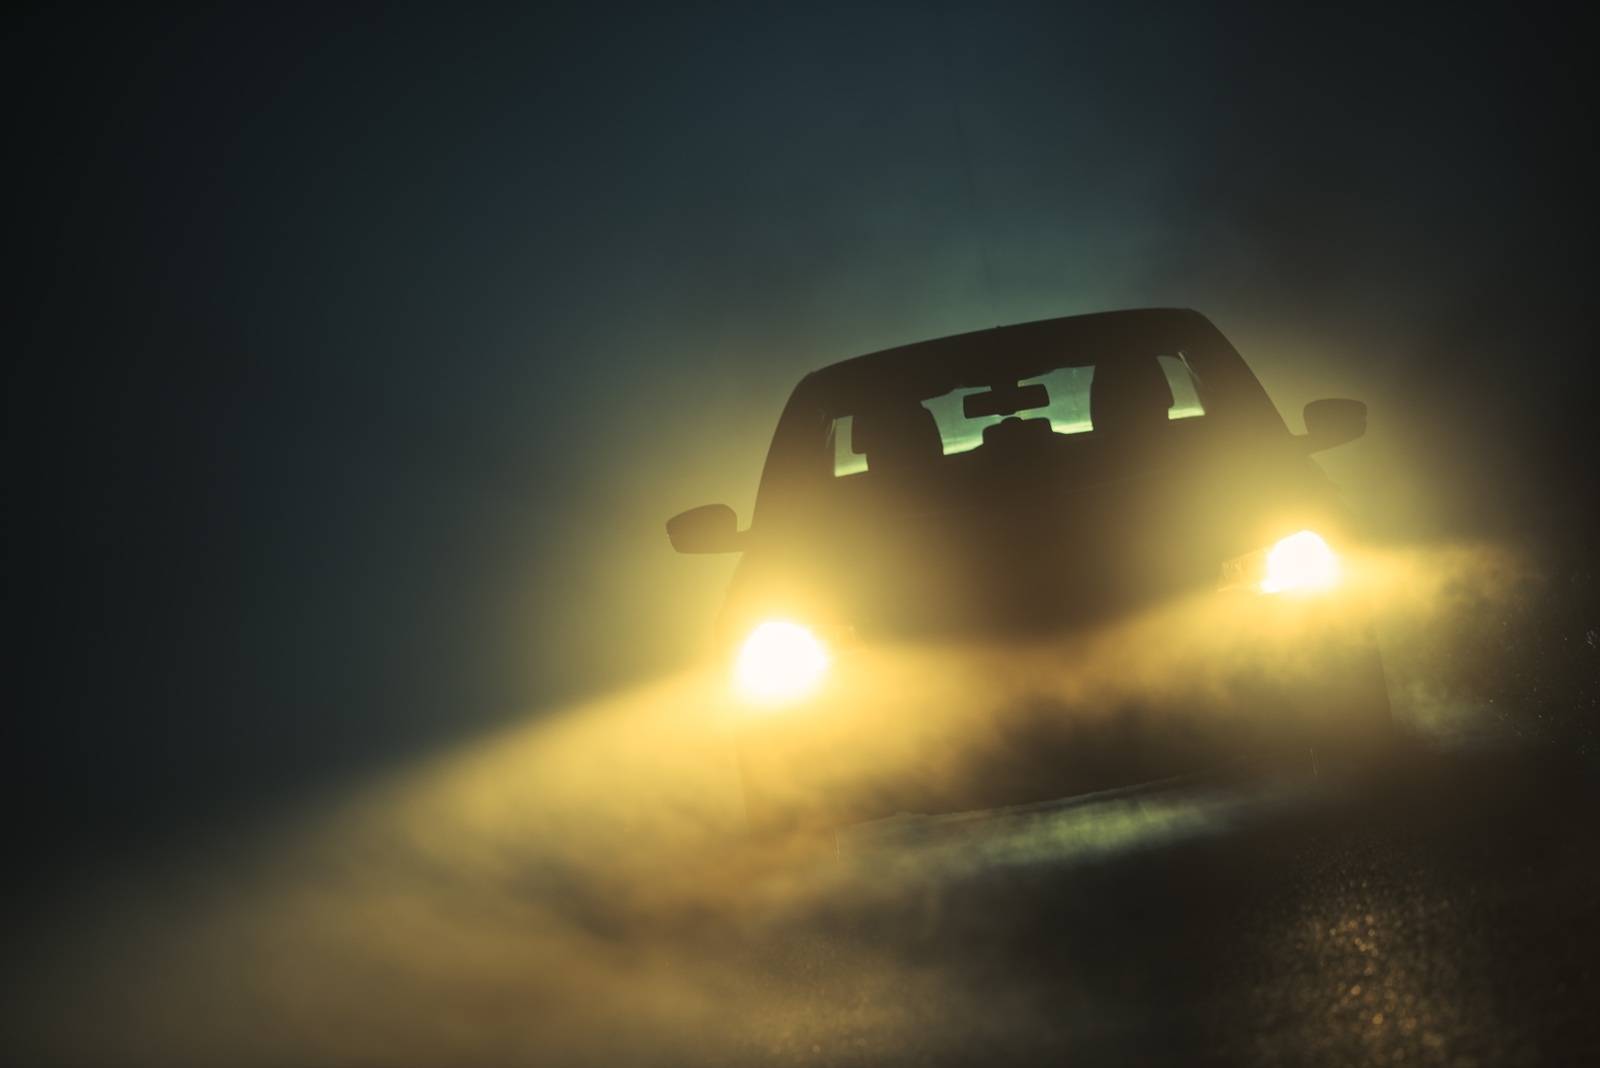 Nebel: Tagfahrlicht allein reicht nicht aus / Tipps zum sicheren Fahren bei  schlechter